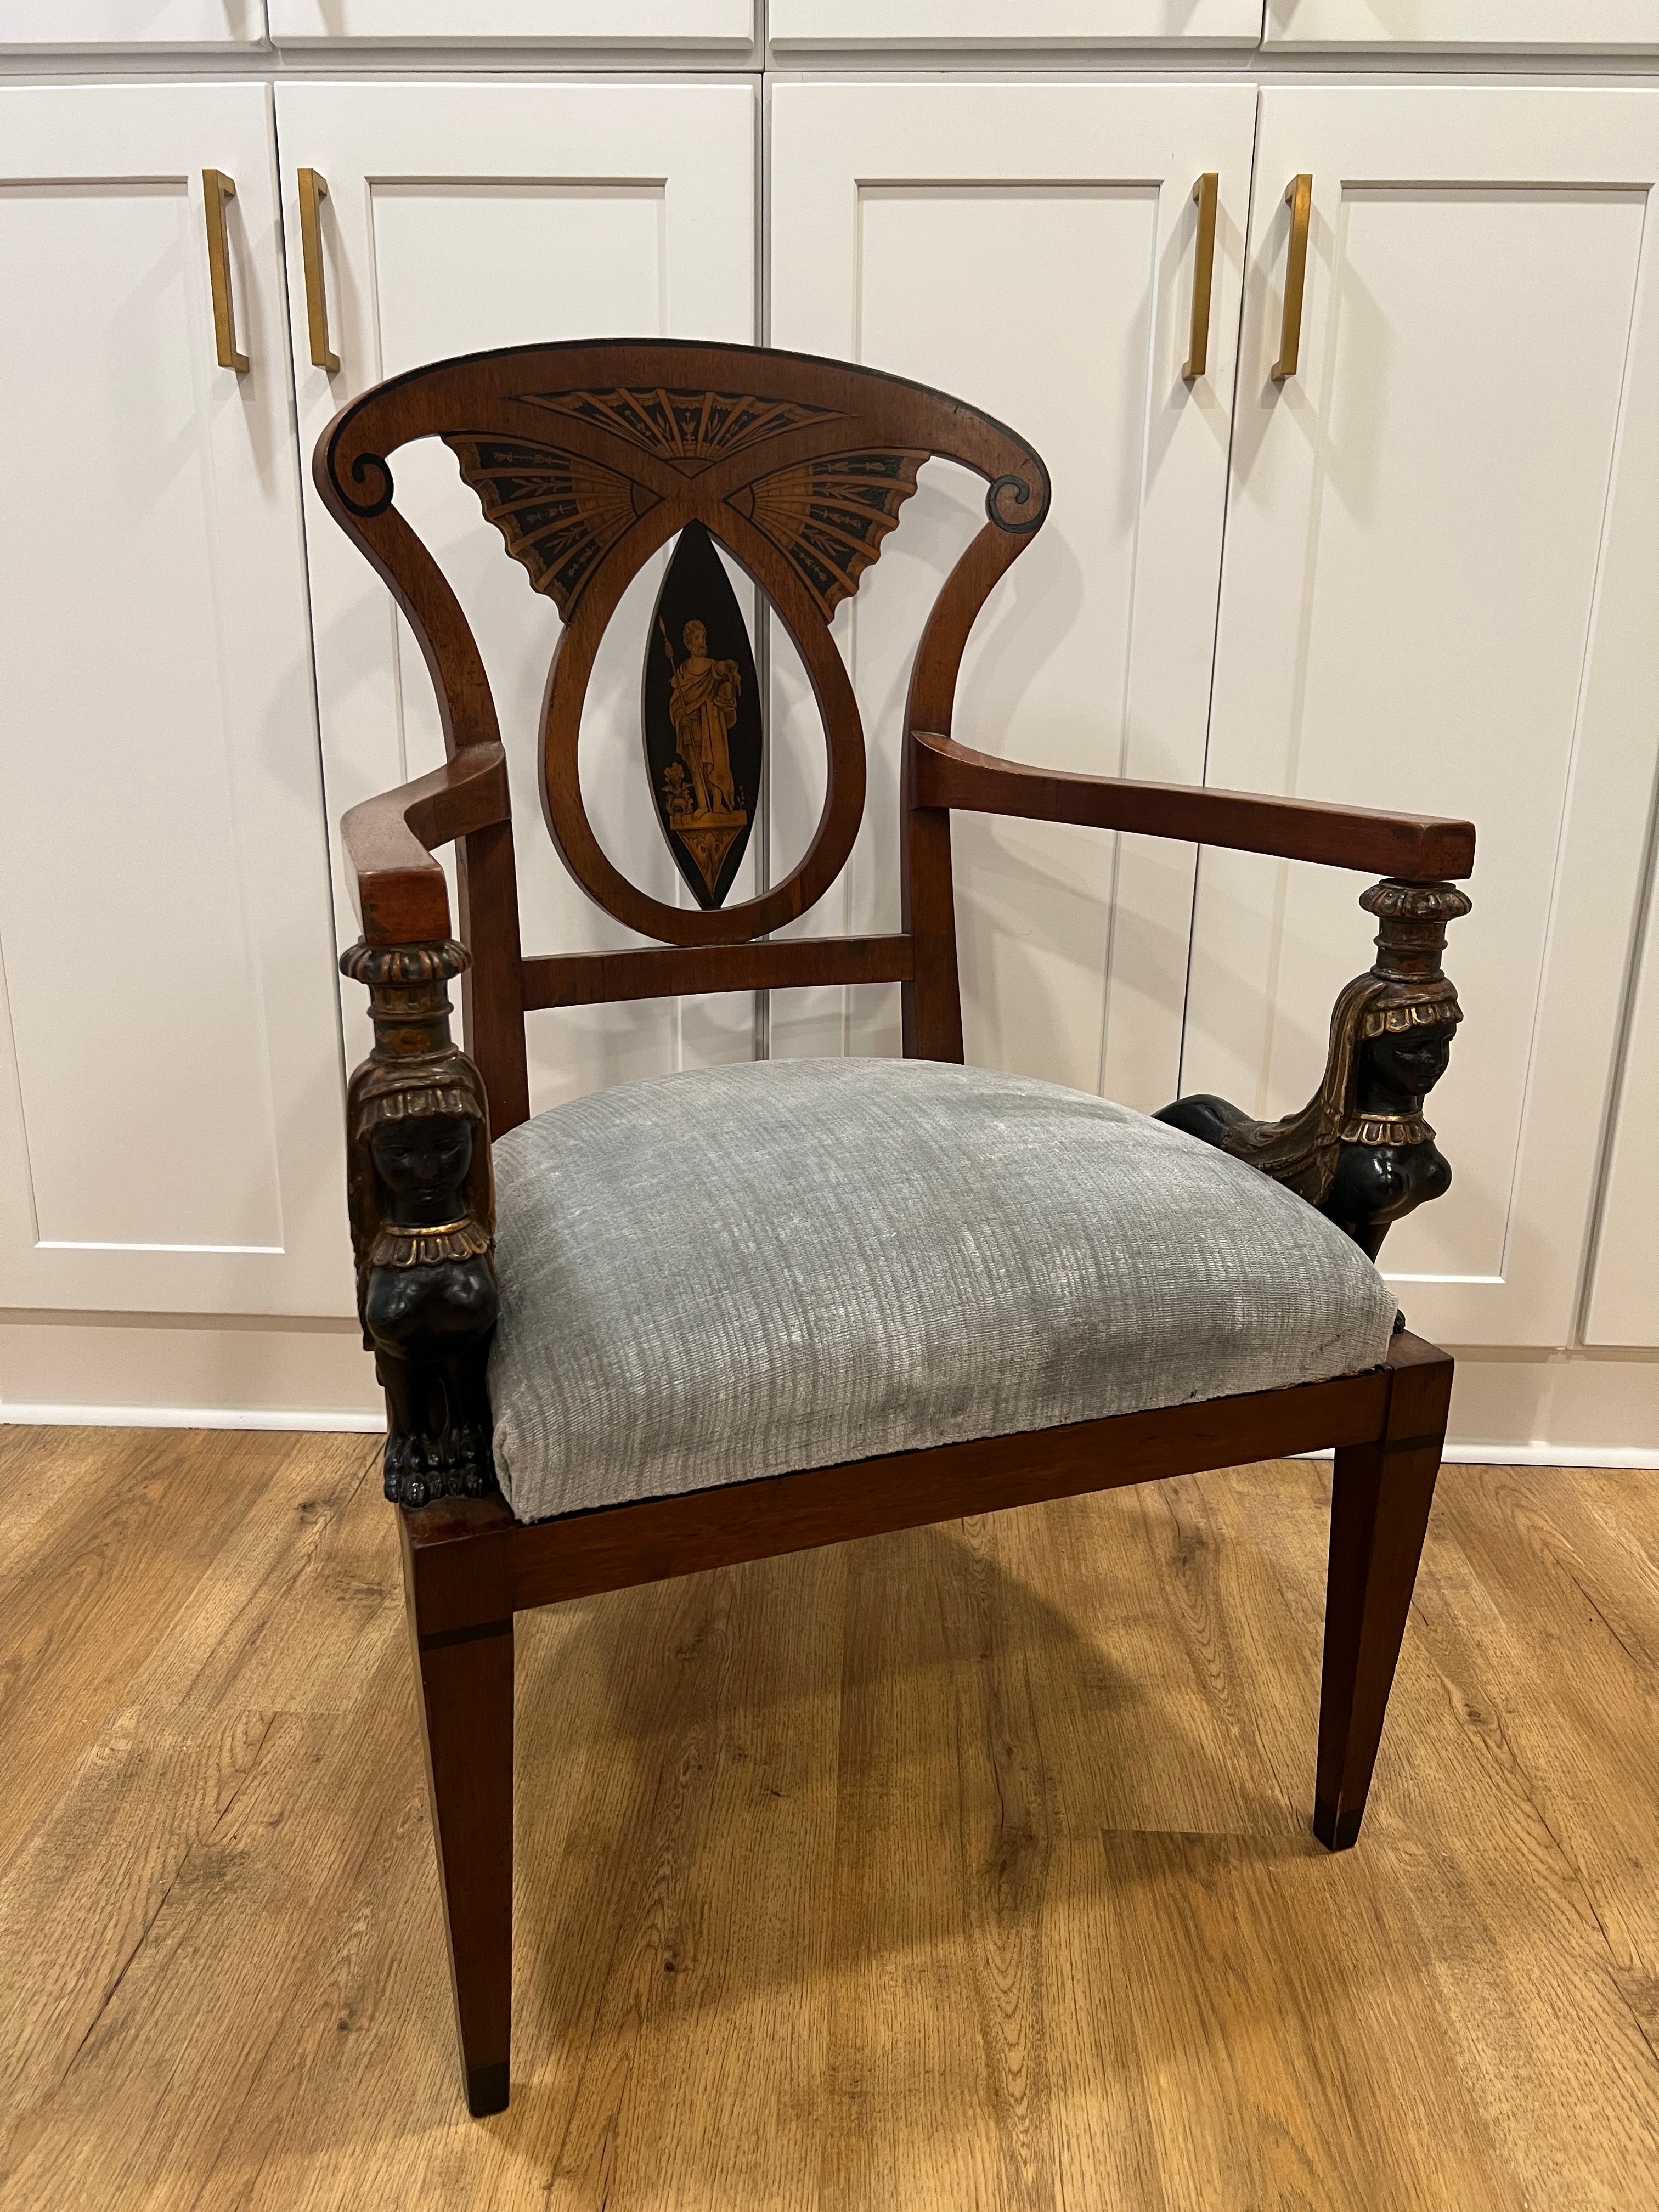 Italienisch, Ende 19. Jahrhundert.

Ein beeindruckender und einzigartiger neoklassizistischer Sessel, der wahrscheinlich während der Grand-Tour-Periode in Italien hergestellt wurde. Mit einer beeindruckenden, gewirbelten oberen Schiene und einem